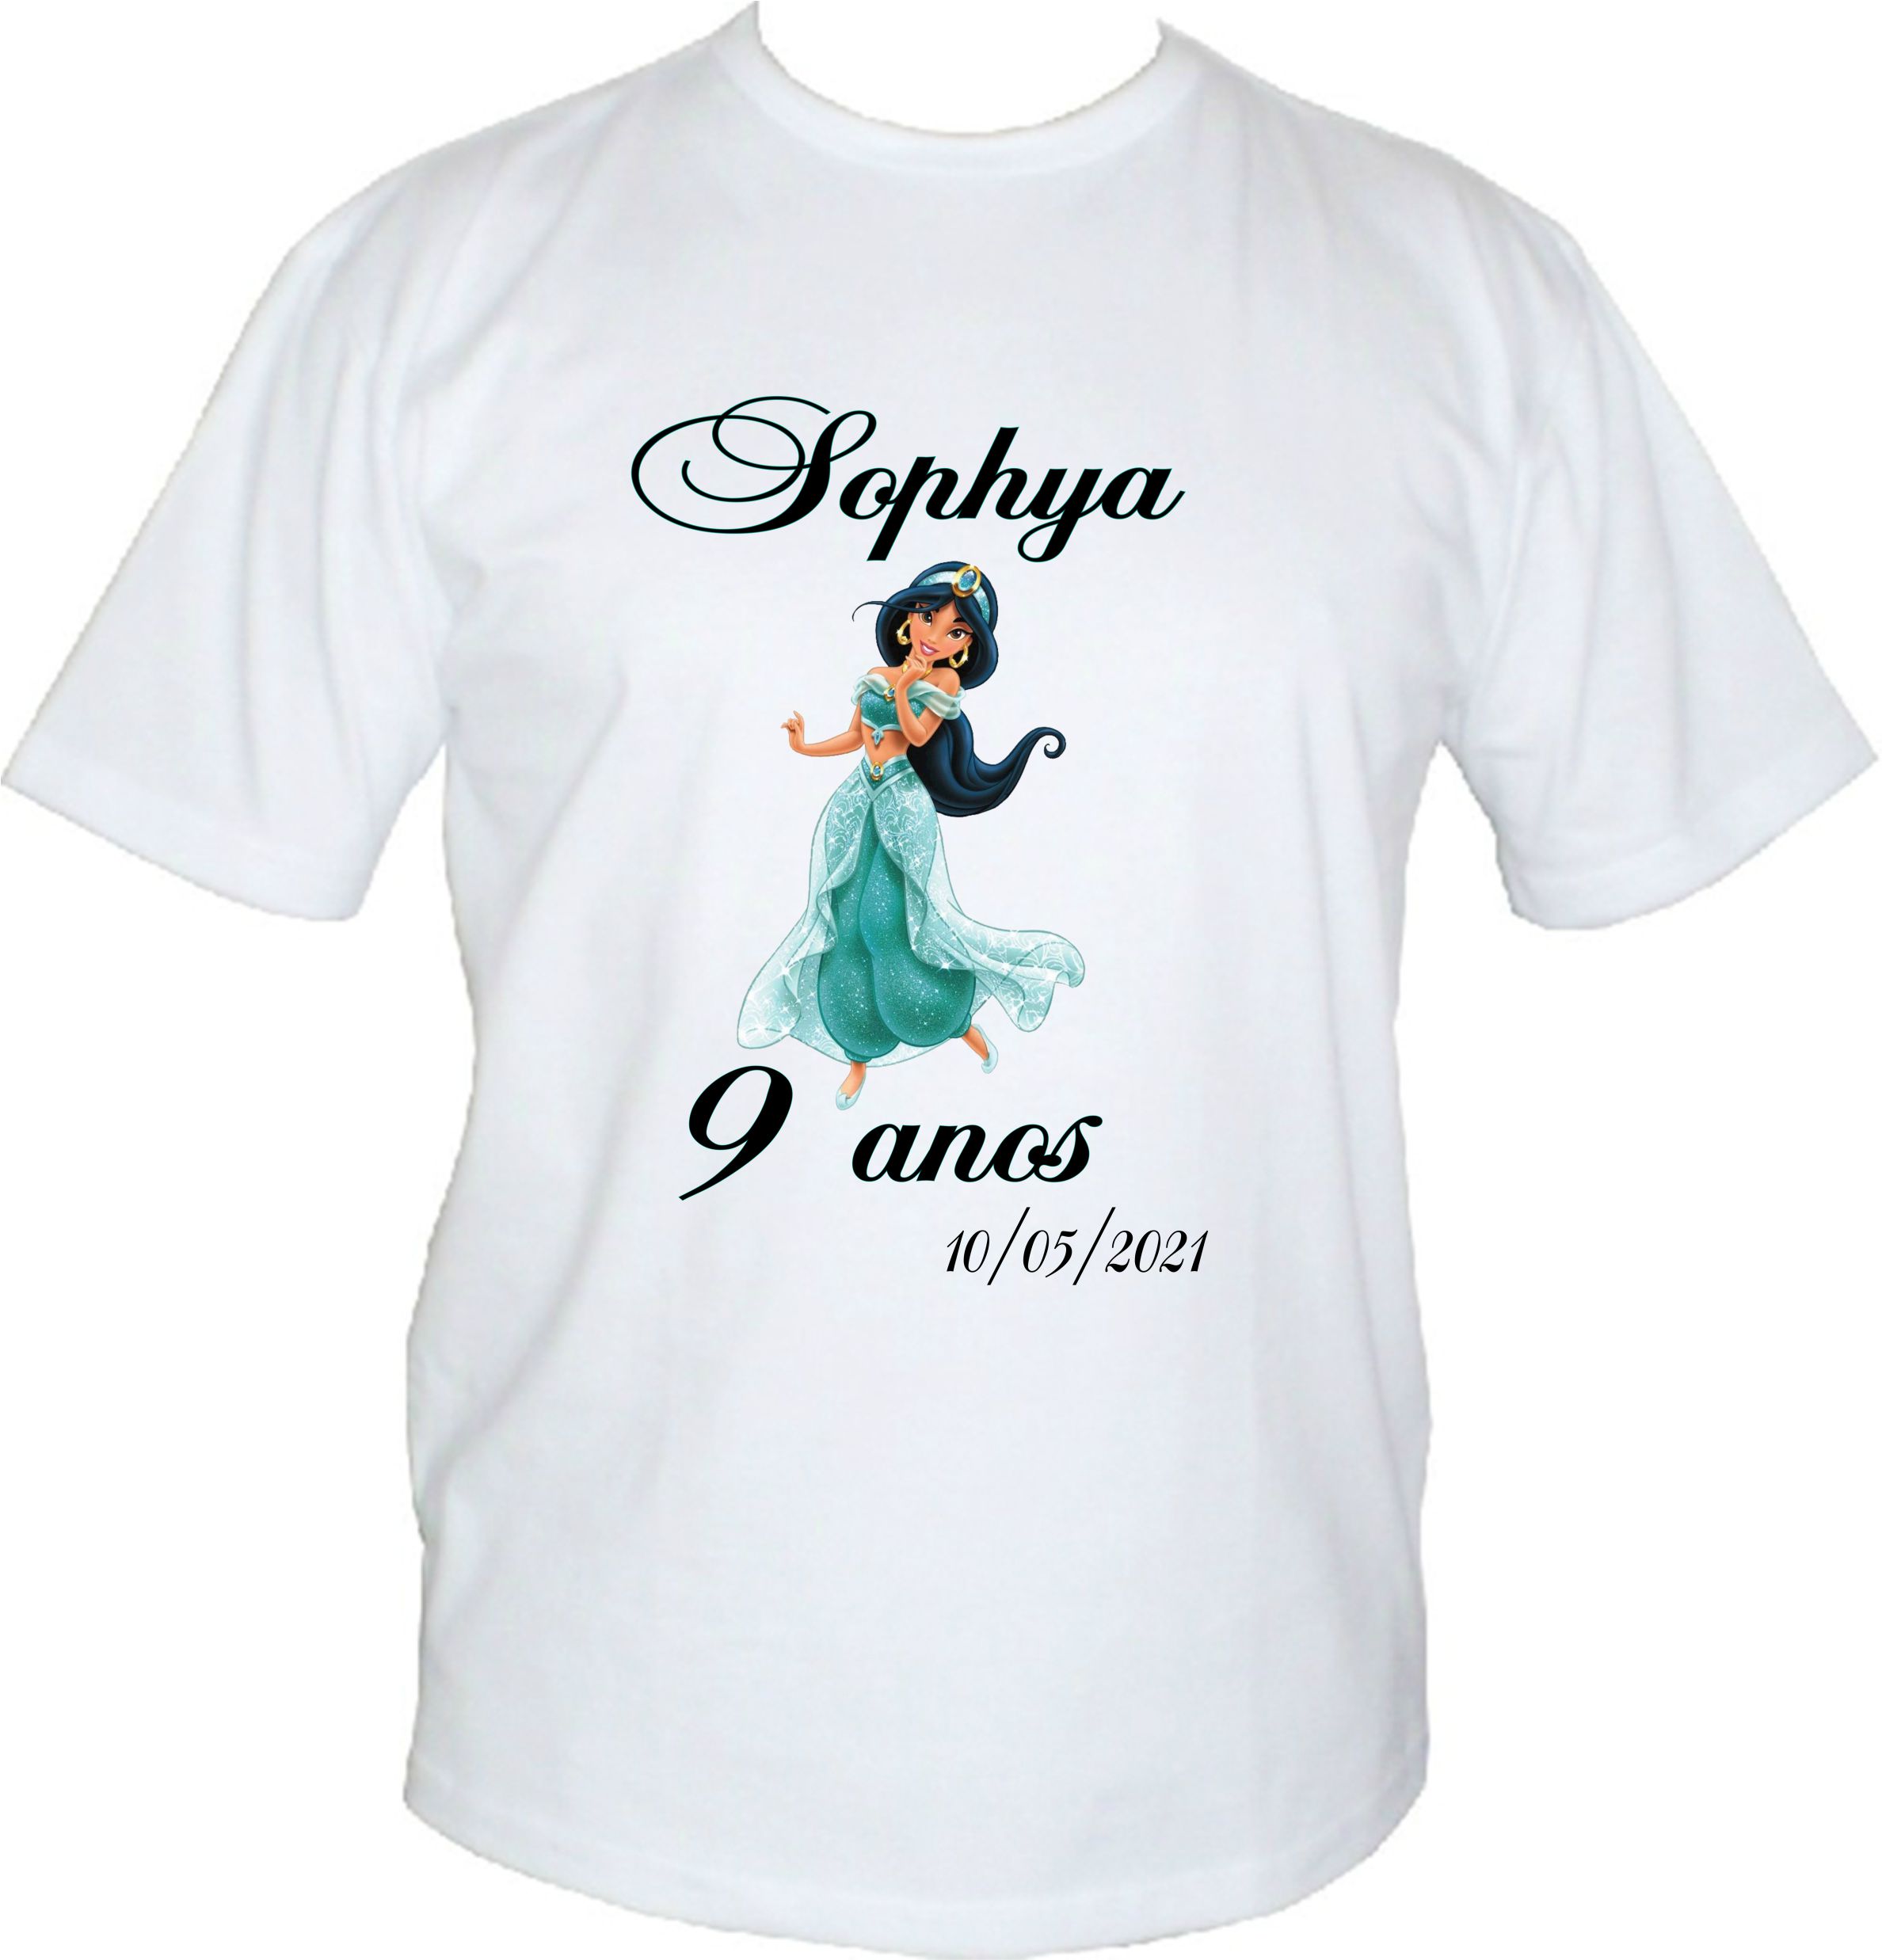 Camiseta Personalizadas - Princesa Sofia - Só Canecas & Personalizados